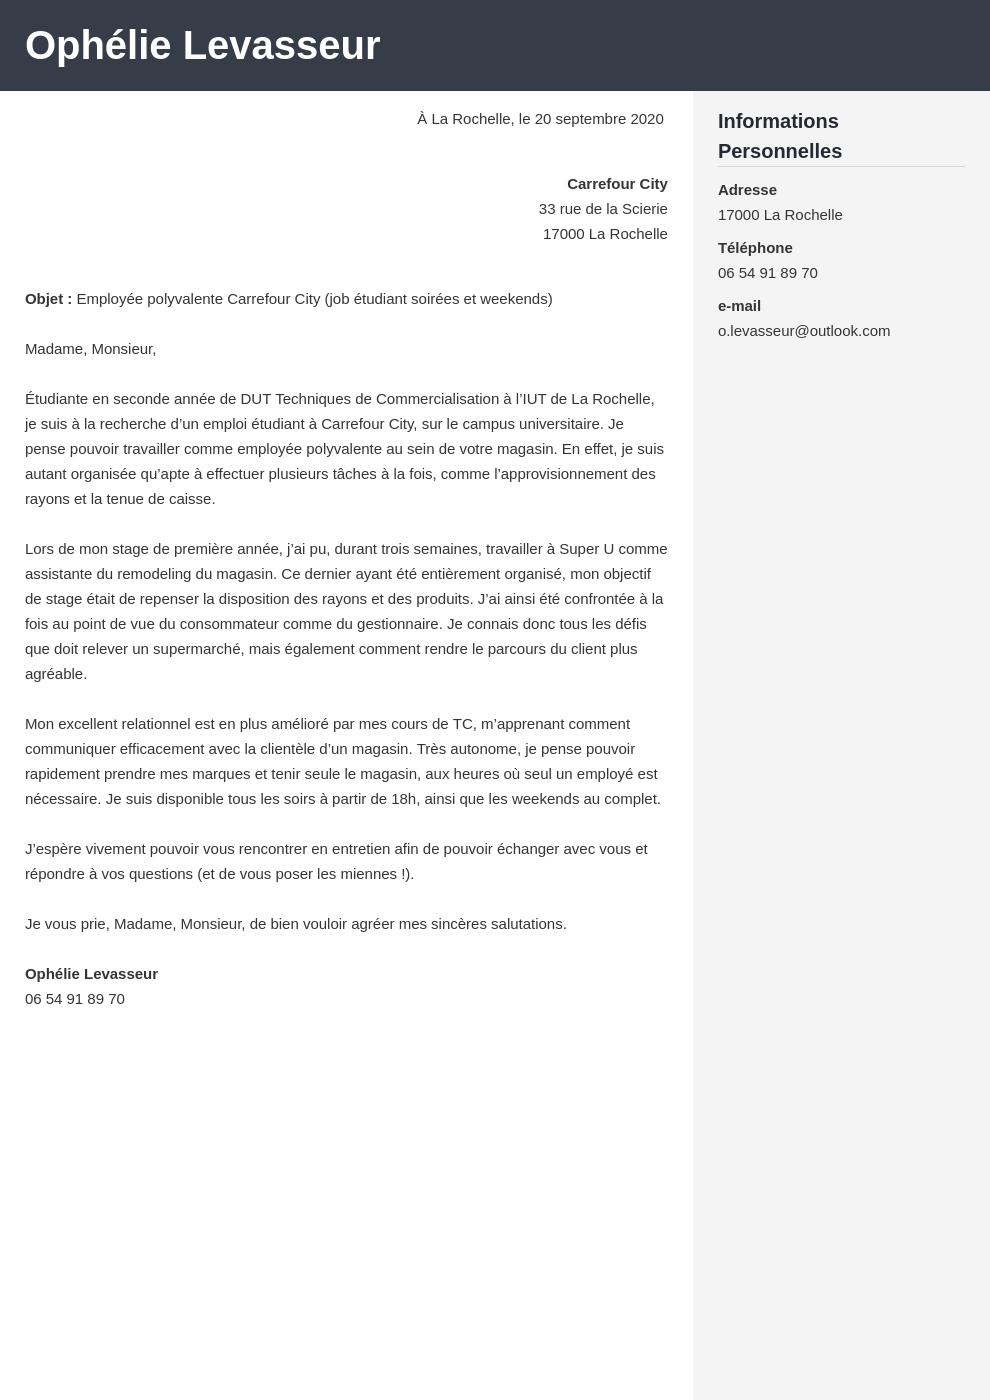 Exemple de lettre de motivation Carrefour [job étudiant et plus]